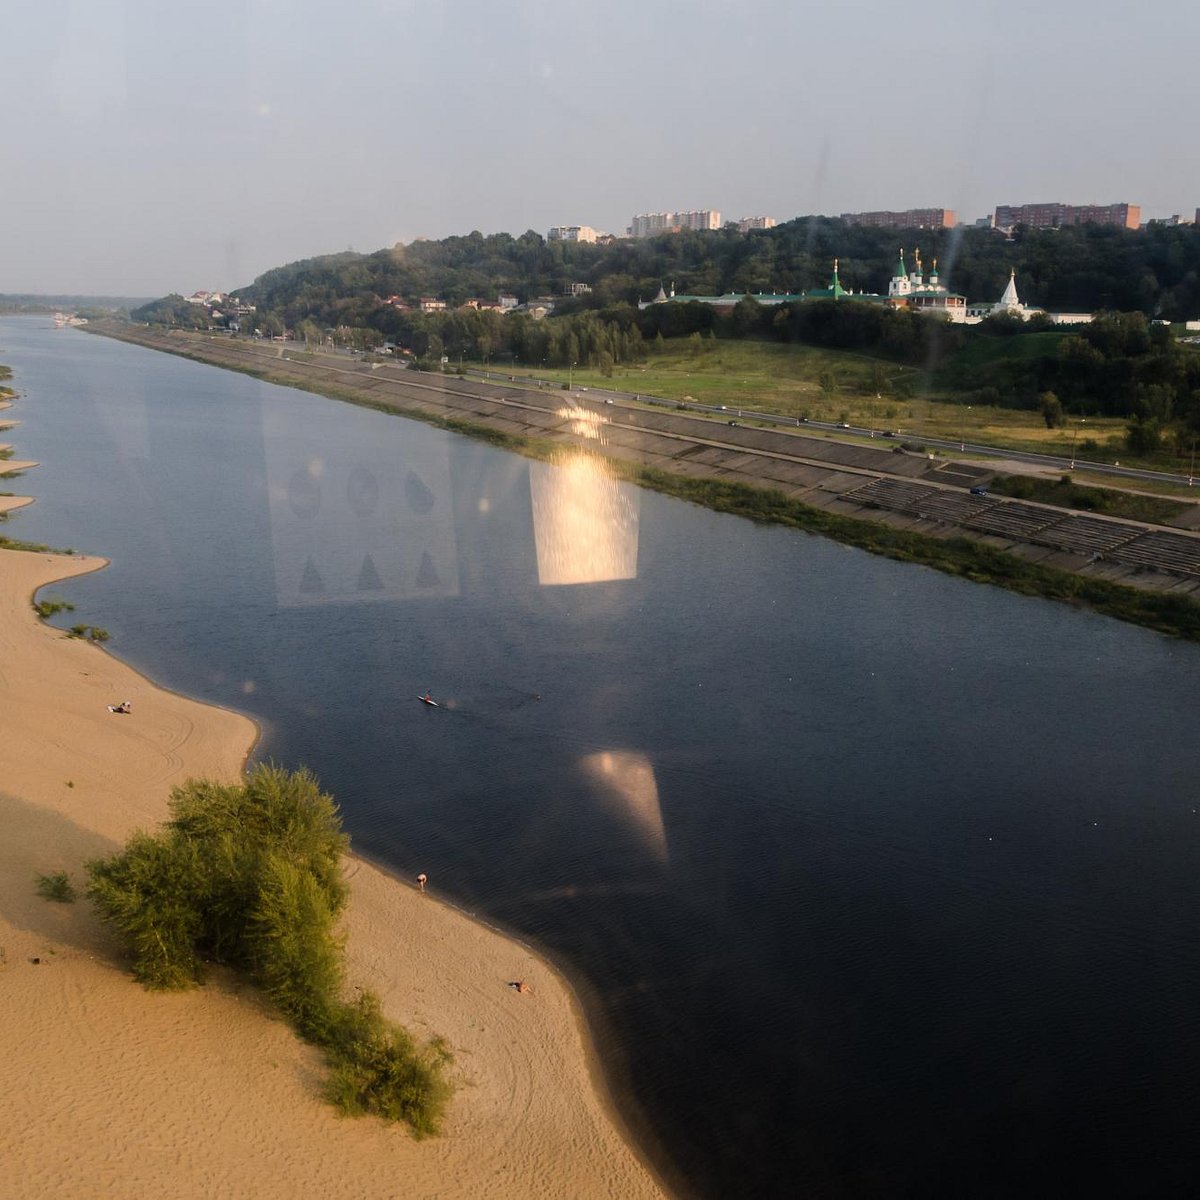 фото набережная гребного канала в нижнем новгороде